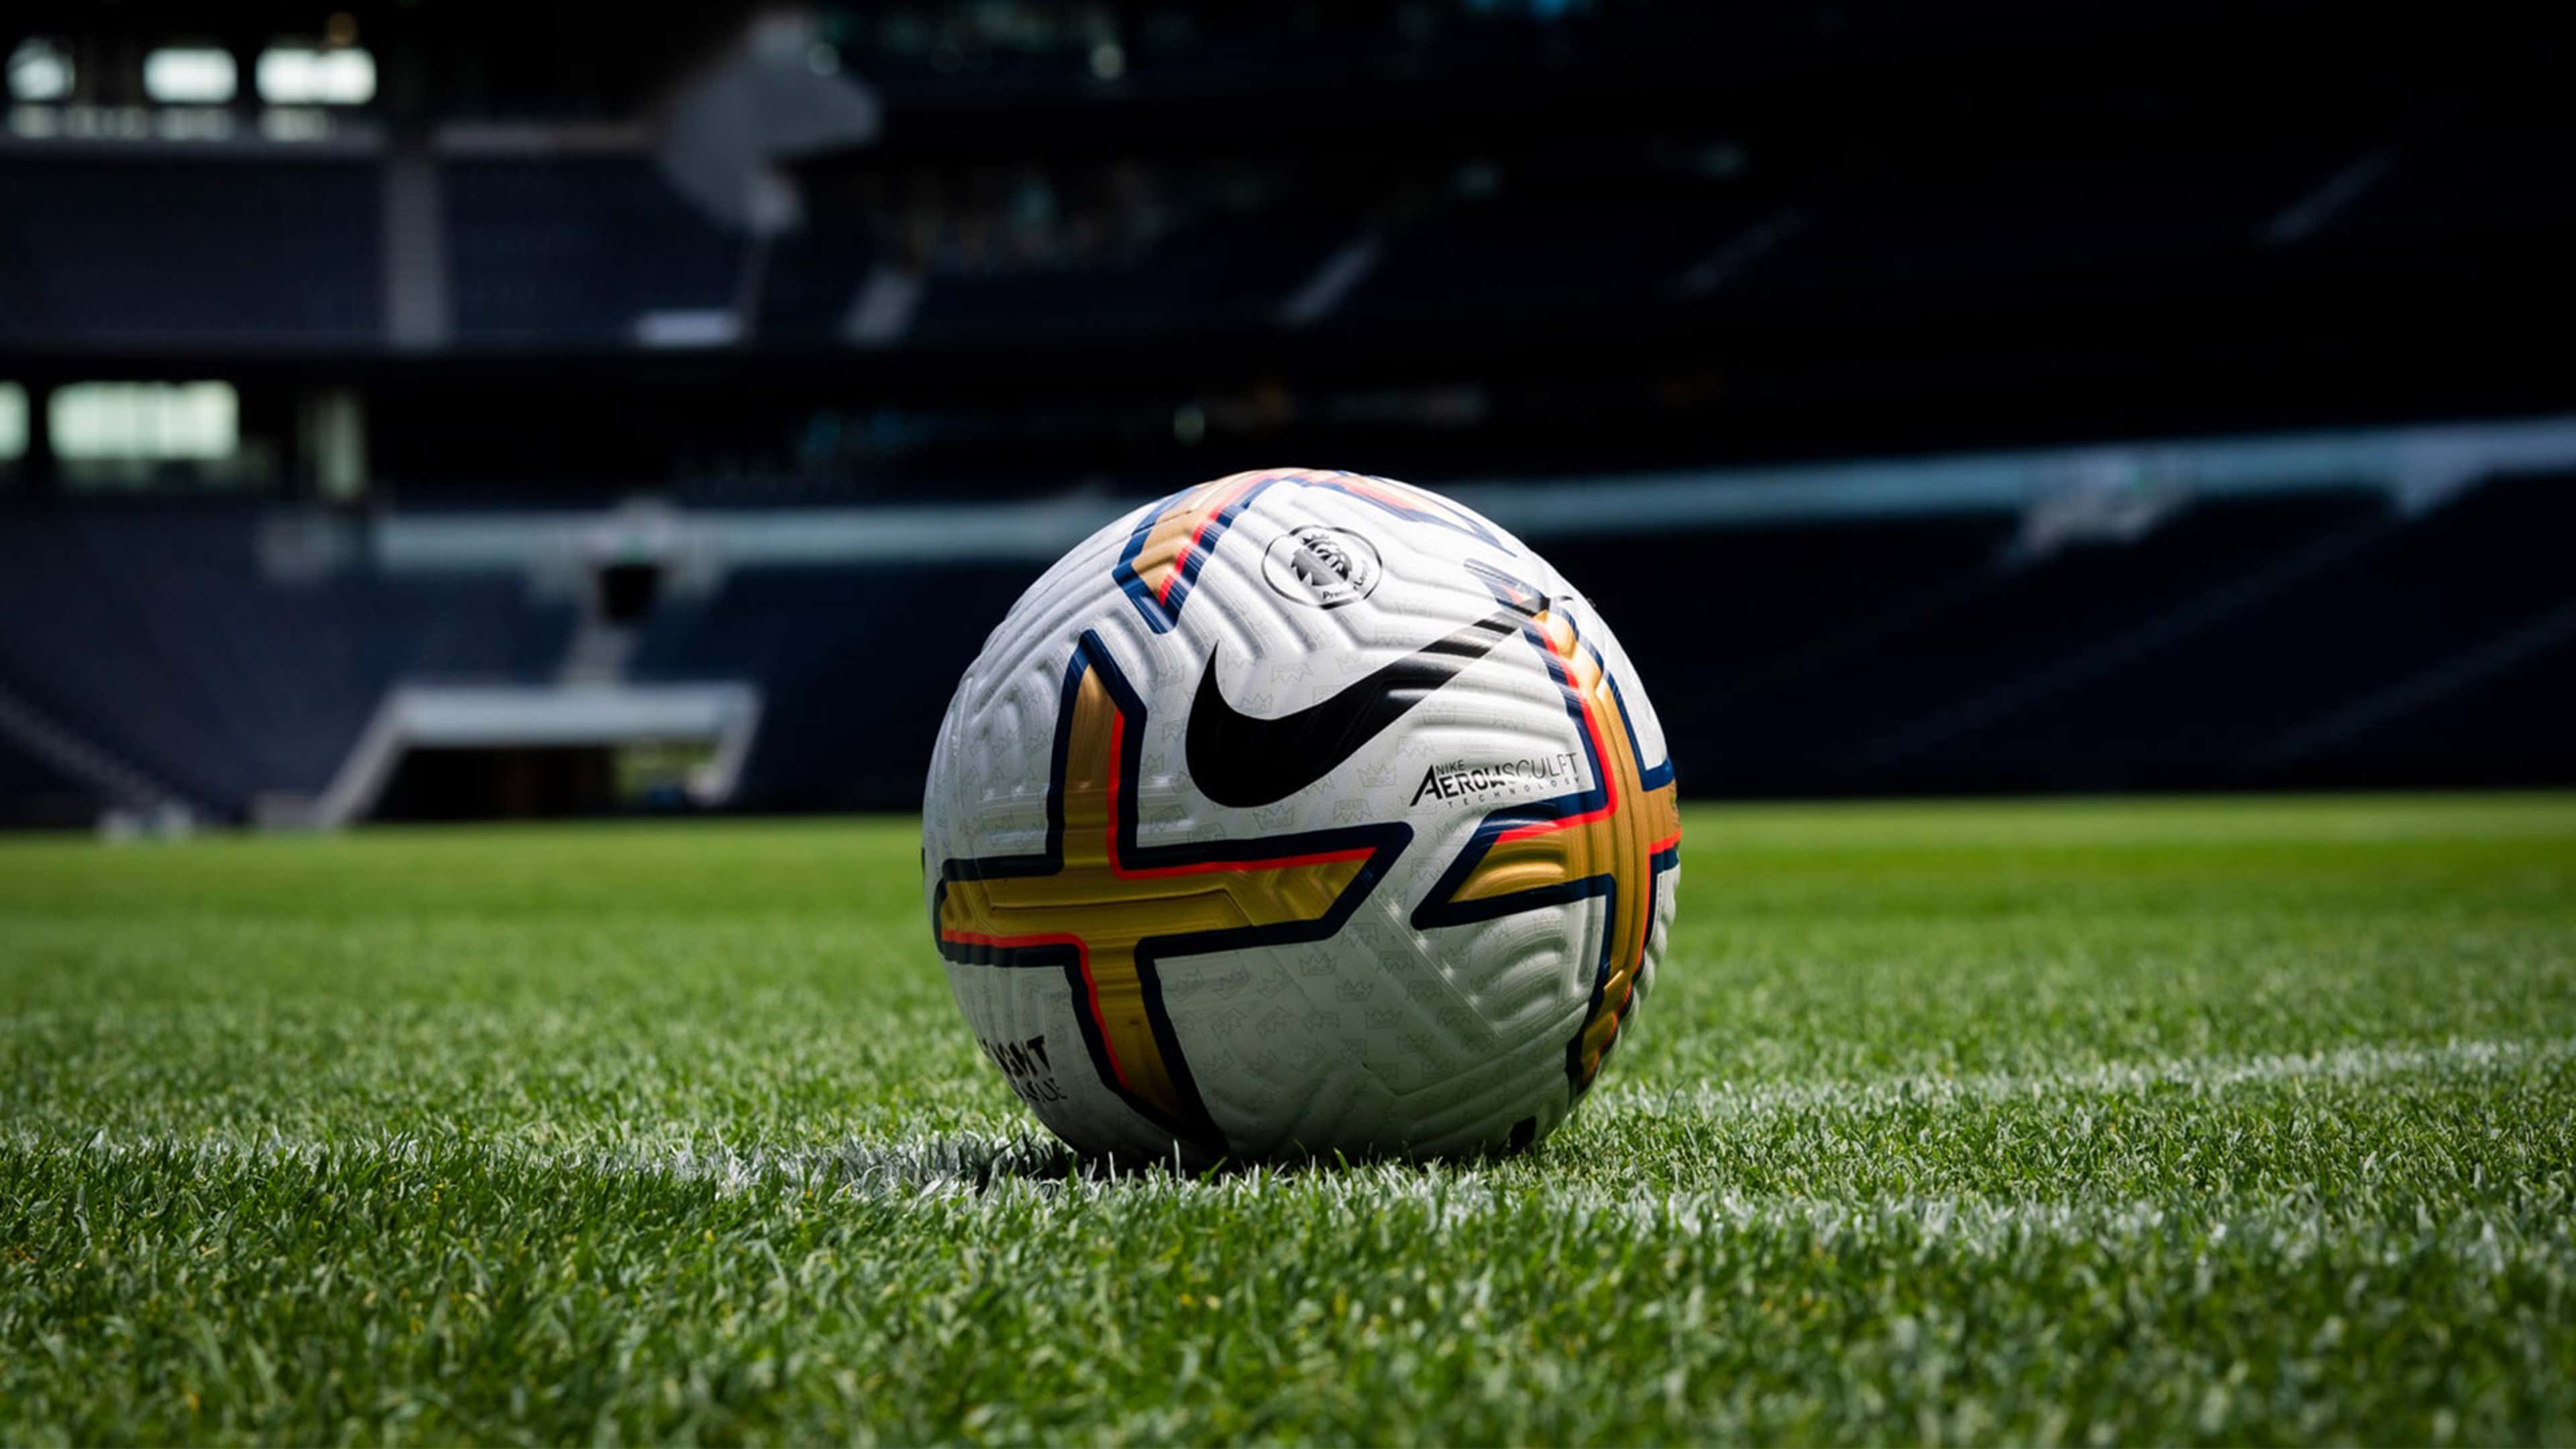 Nike lança bola de inverno para Premier League 2022-2023 » Mantos do Futebol